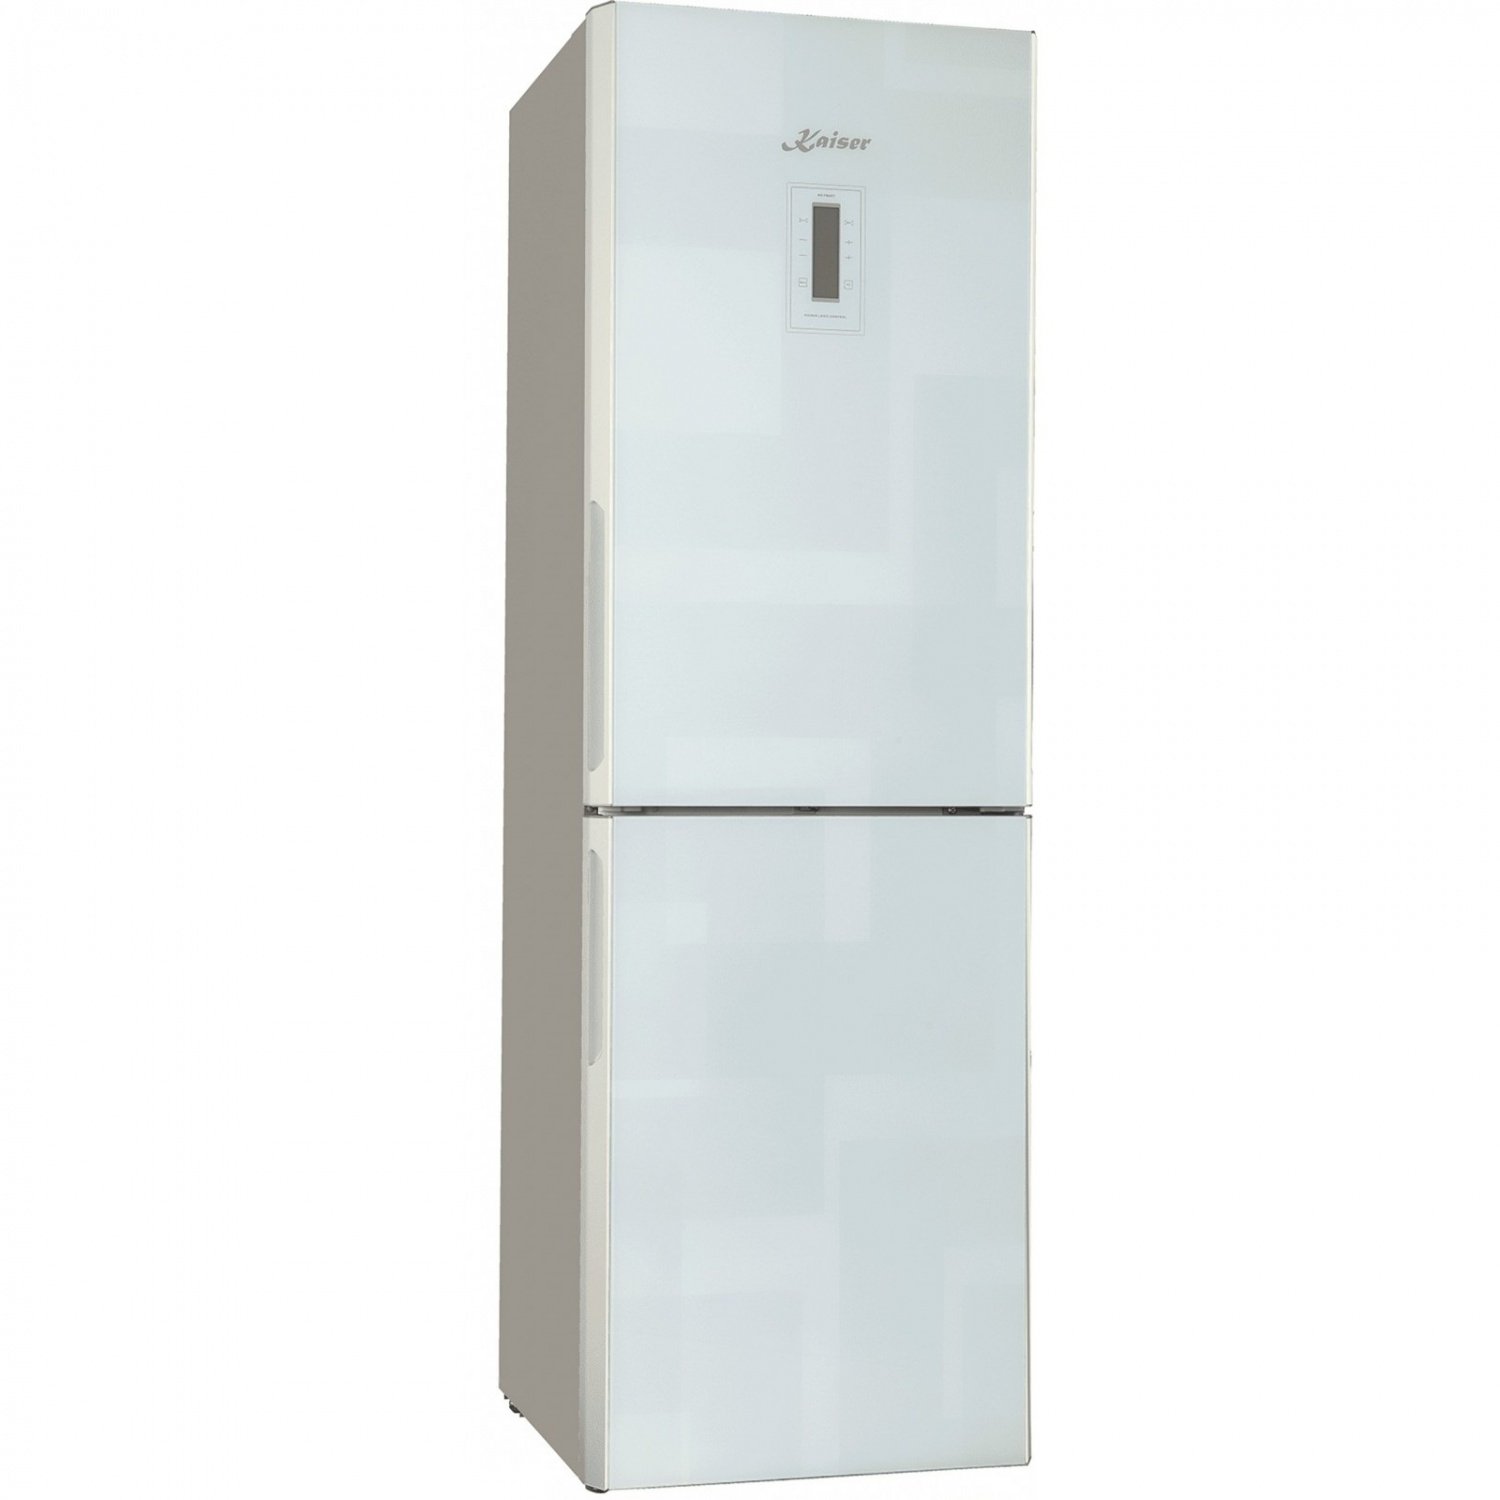 Холодильник Kaiser KK 63205 W фото 